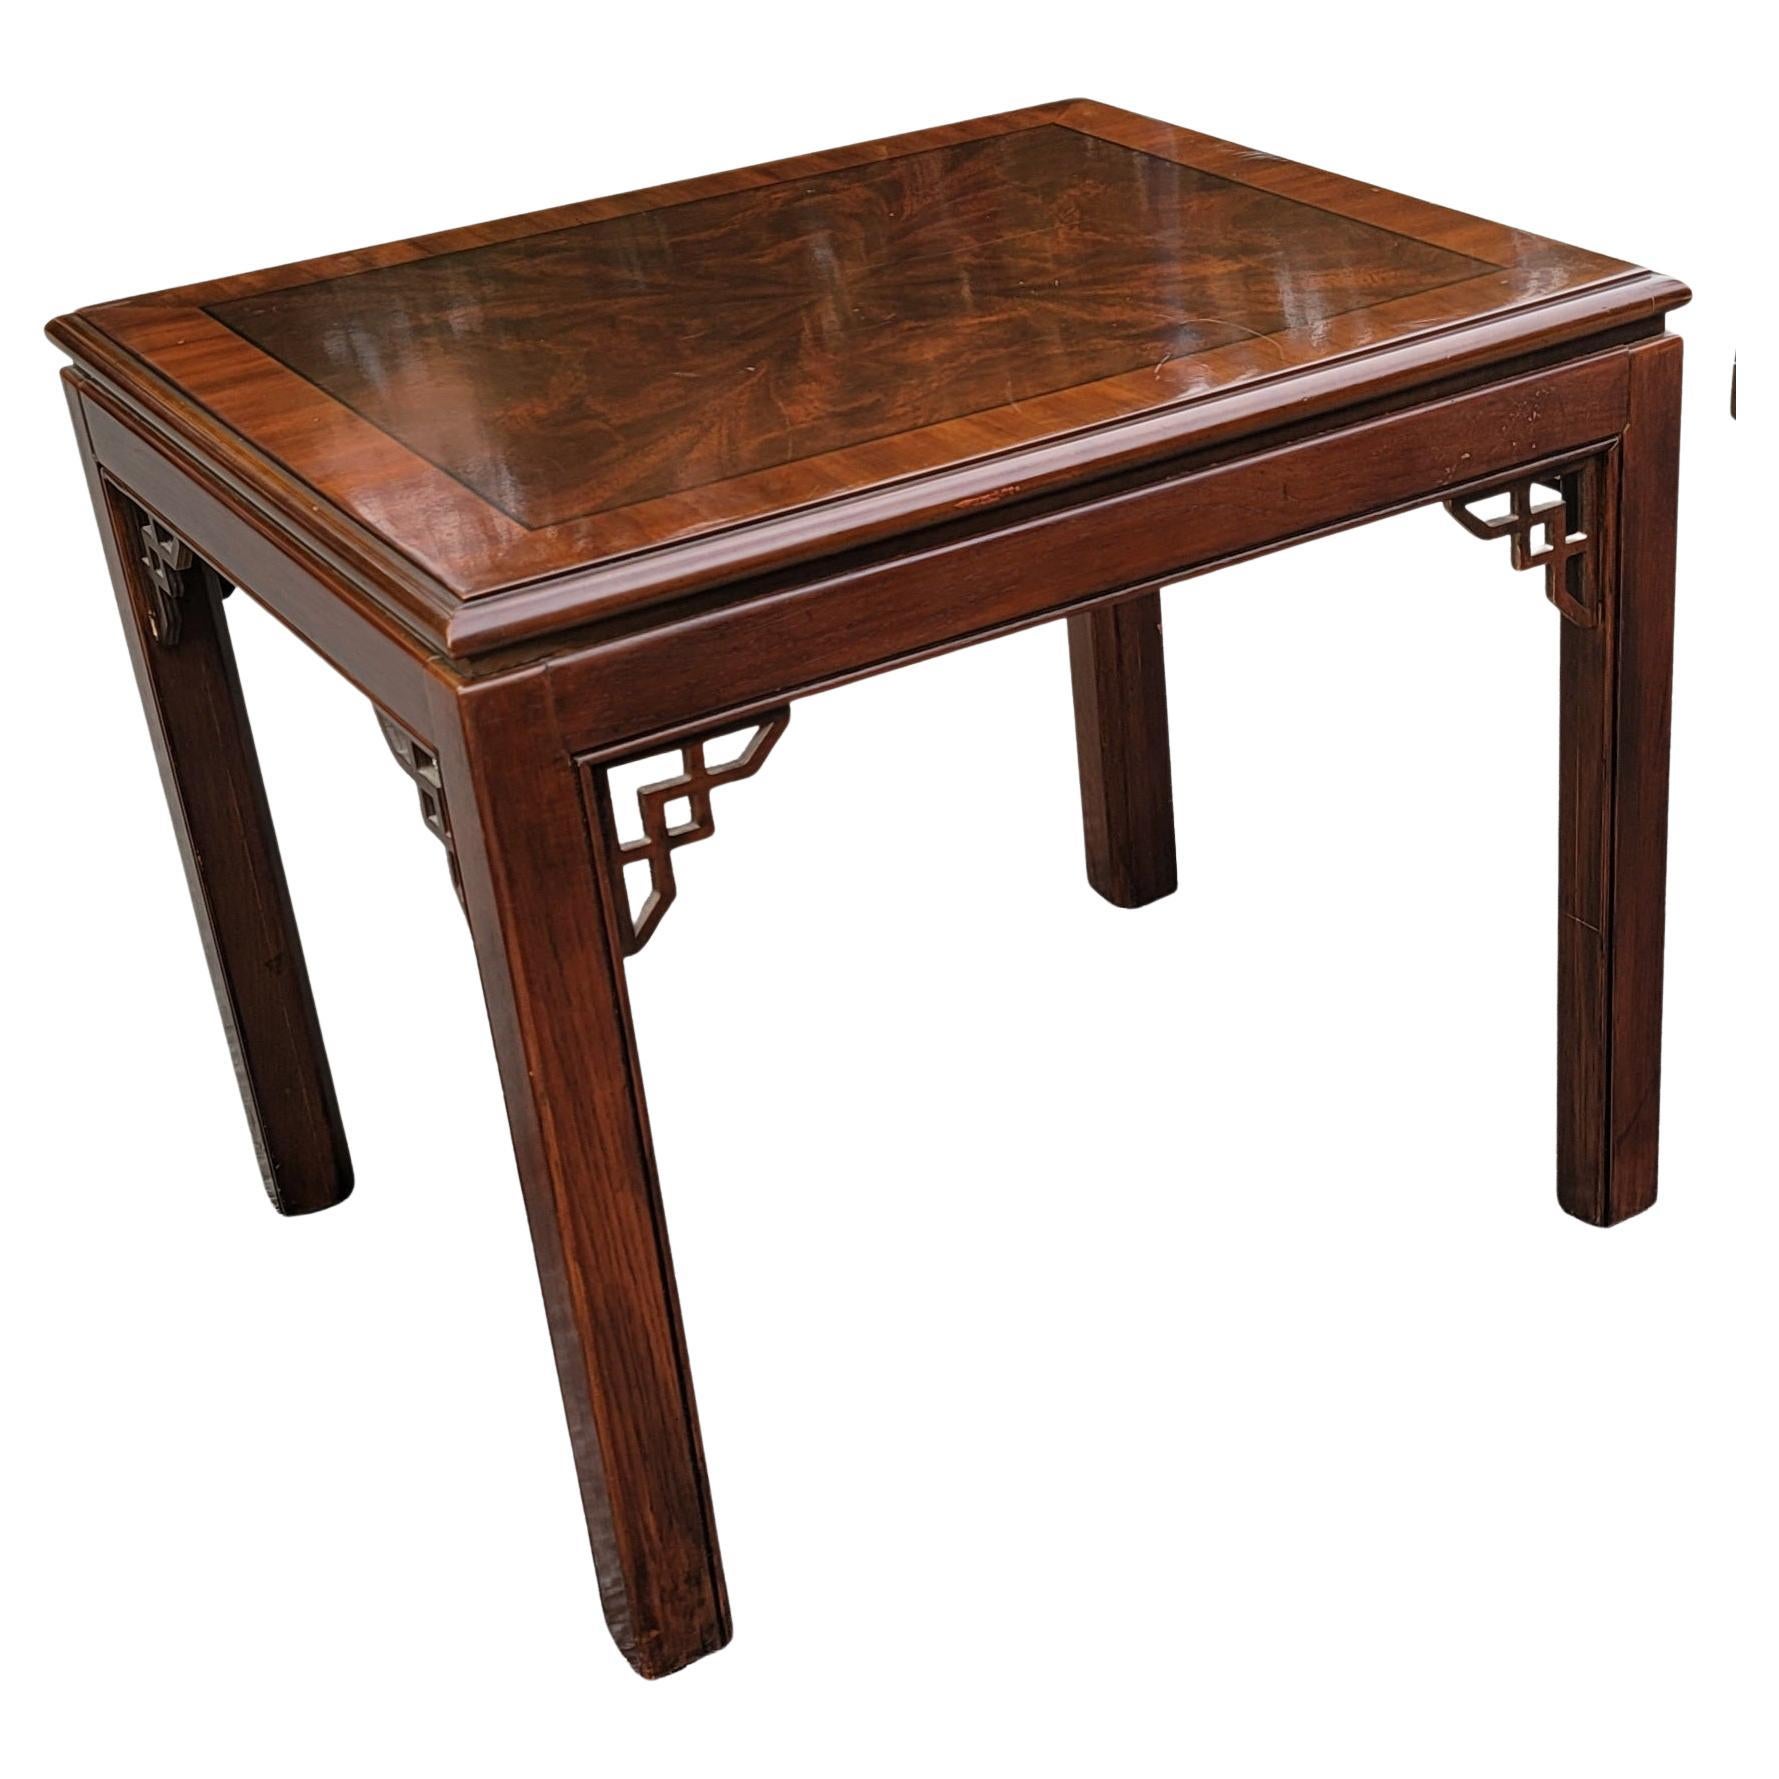 Une charmante table d'appoint en acajou rôti de la Collection Sondage de Drexel Furniture en bon état vintage. 
Mesure 22